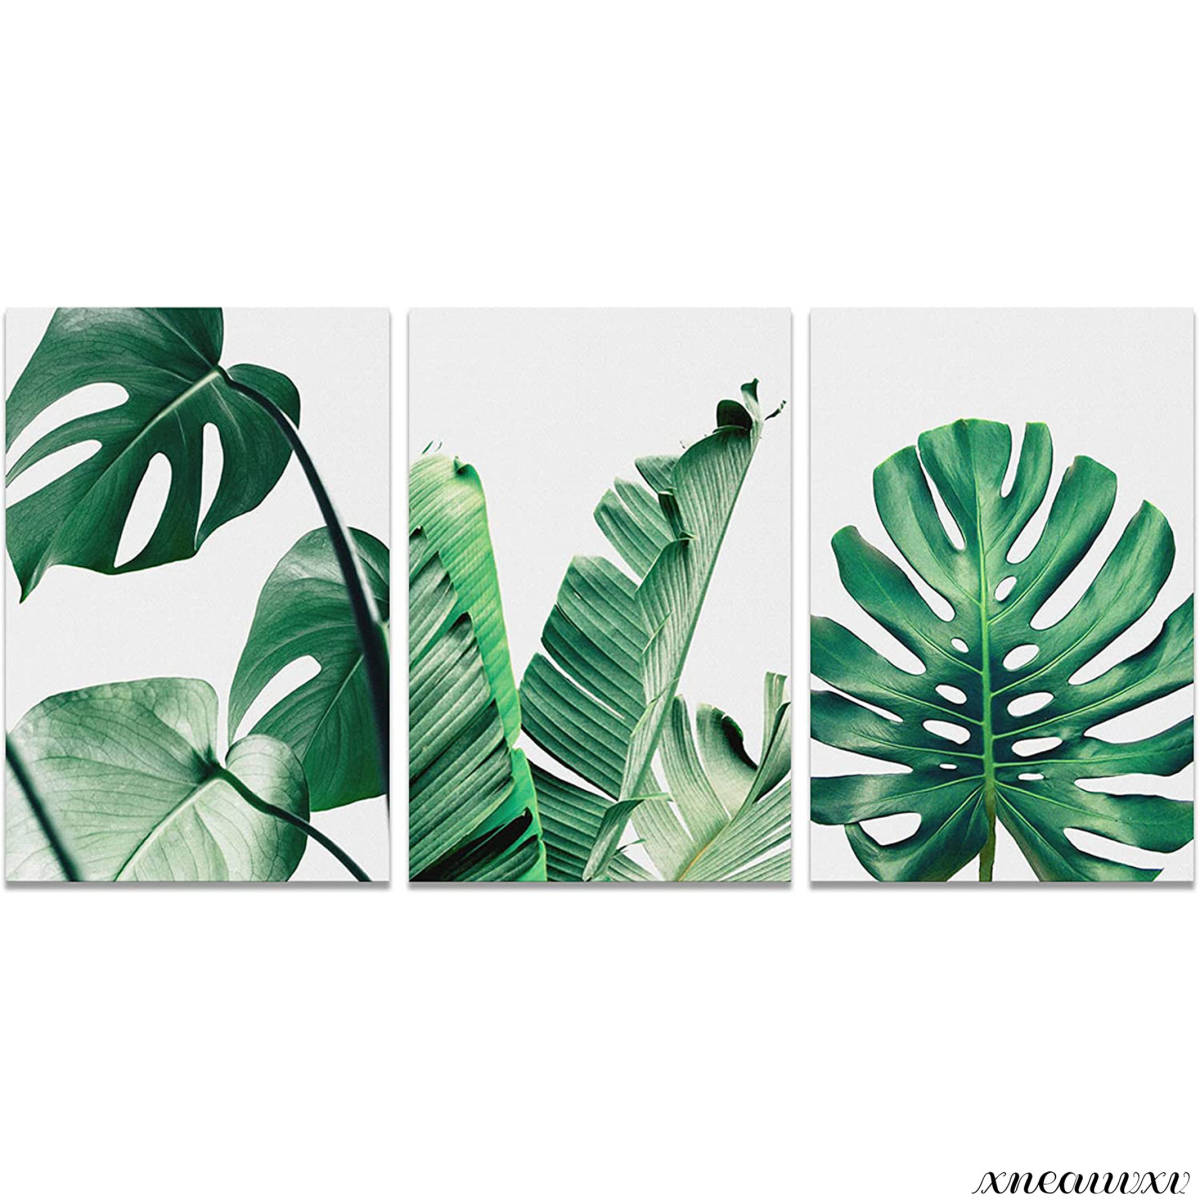 色彩鮮やかな 3枚アートパネル 植物 自然 グリーン 緑 葉 インテリア 部屋飾り 装飾 写真 3パネル 壁掛け おしゃれ, 美術品, 絵画, グラフィック